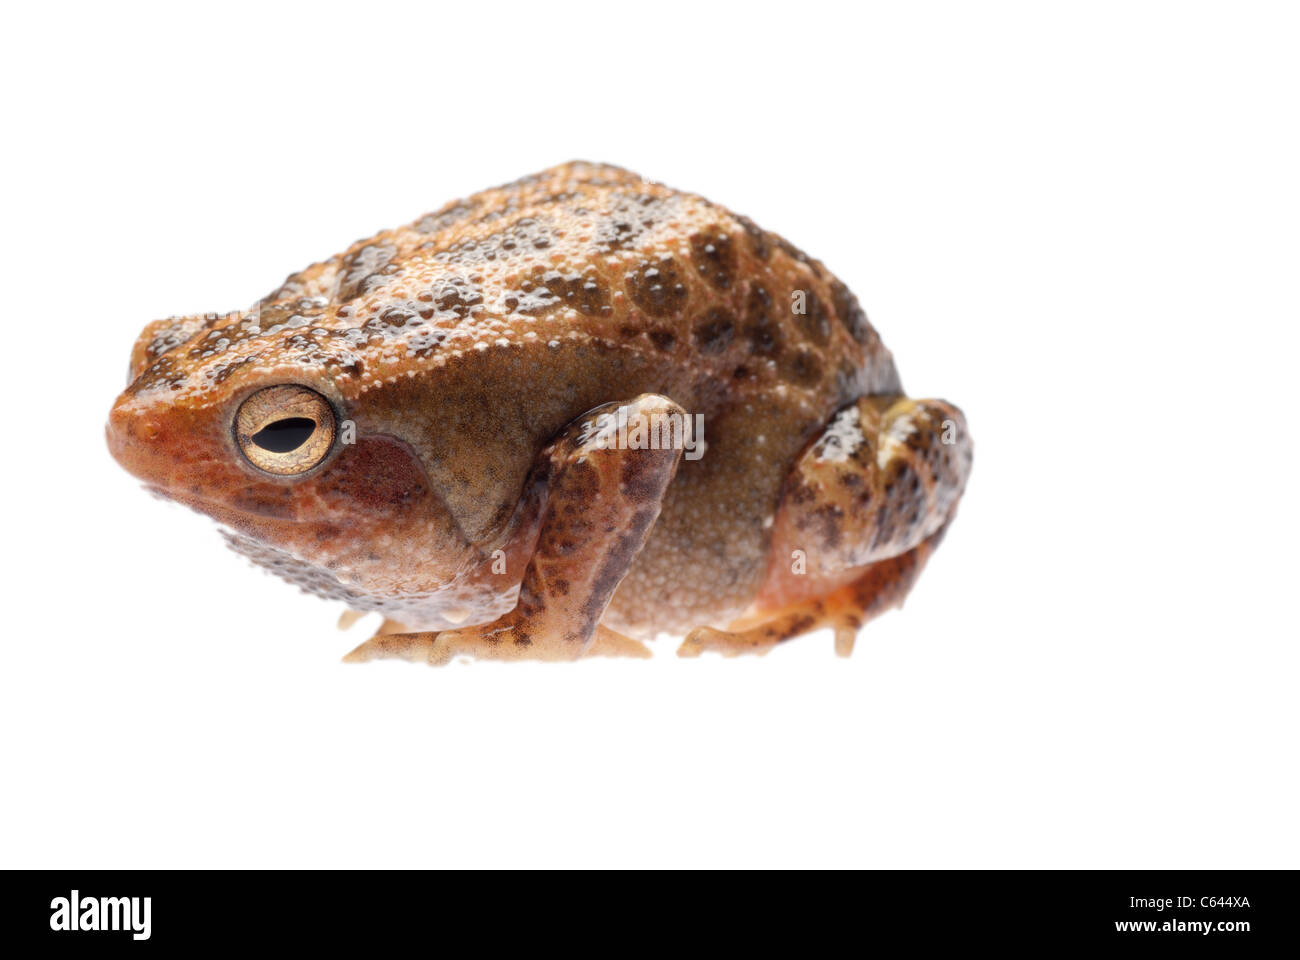 animal amphibian frog isolated on white Stock Photo